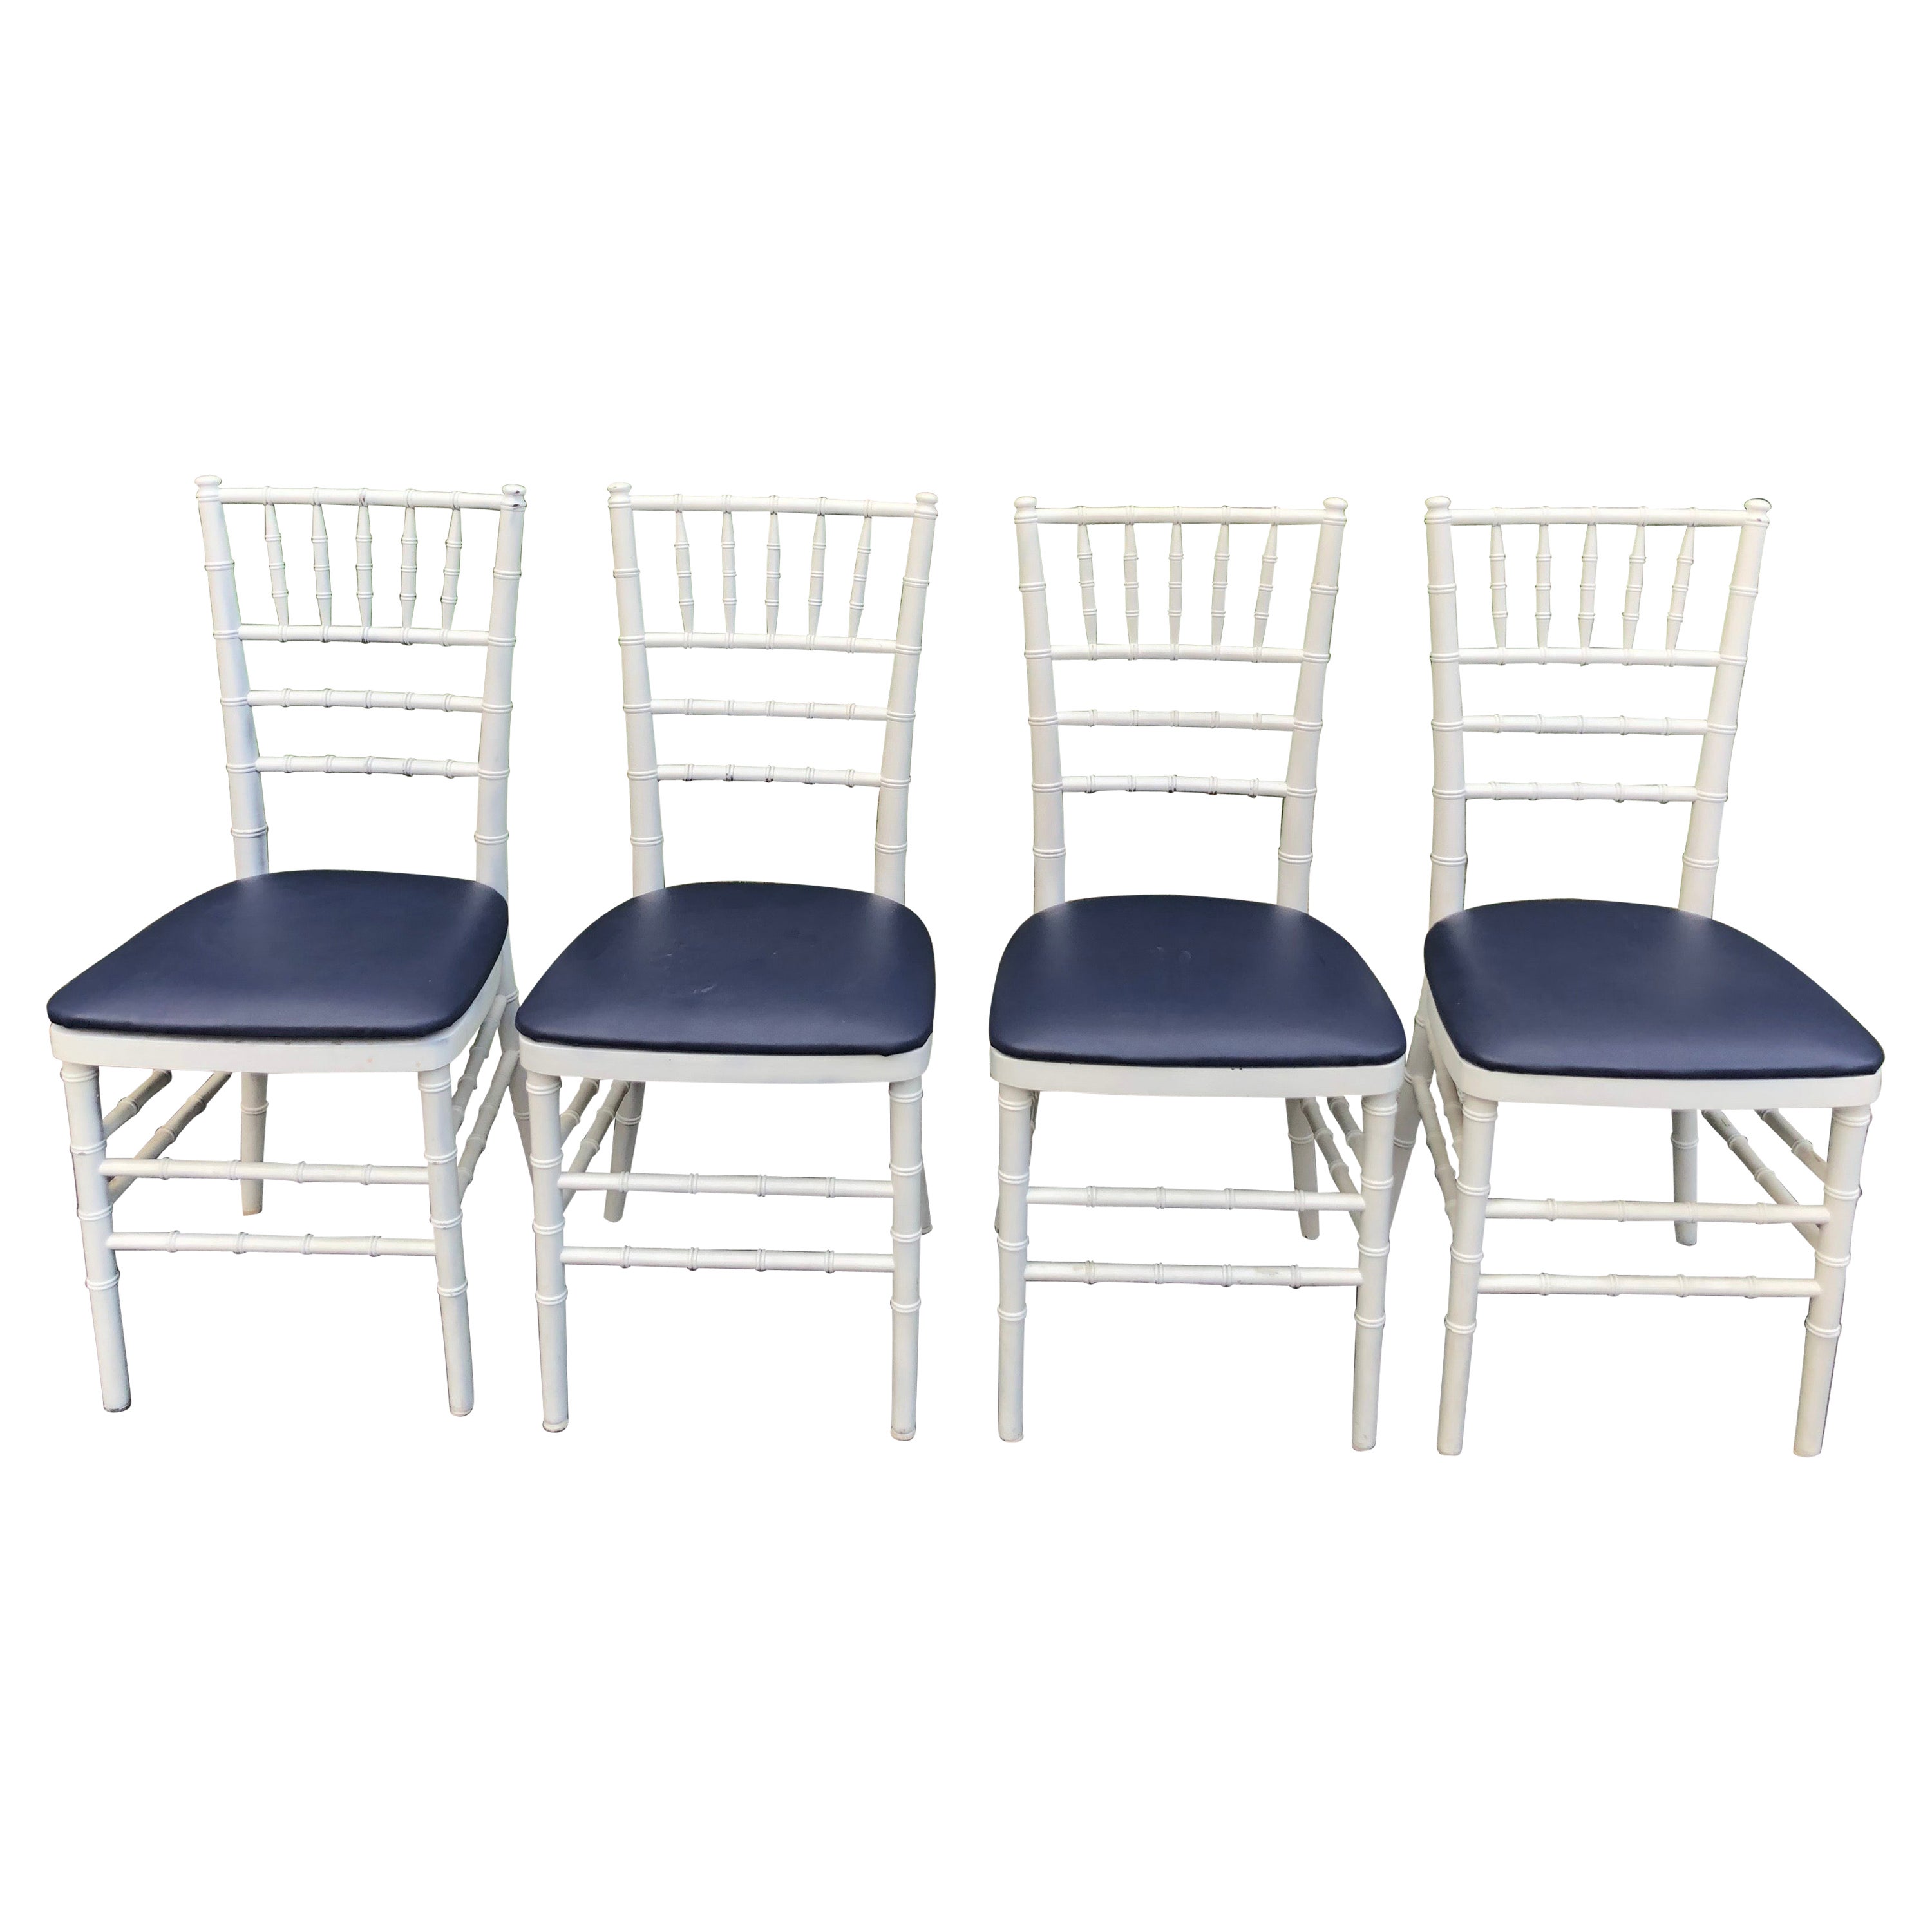 Ensemble de quatre chaises classiques Chiavari en bois blanc avec sièges bleu marine